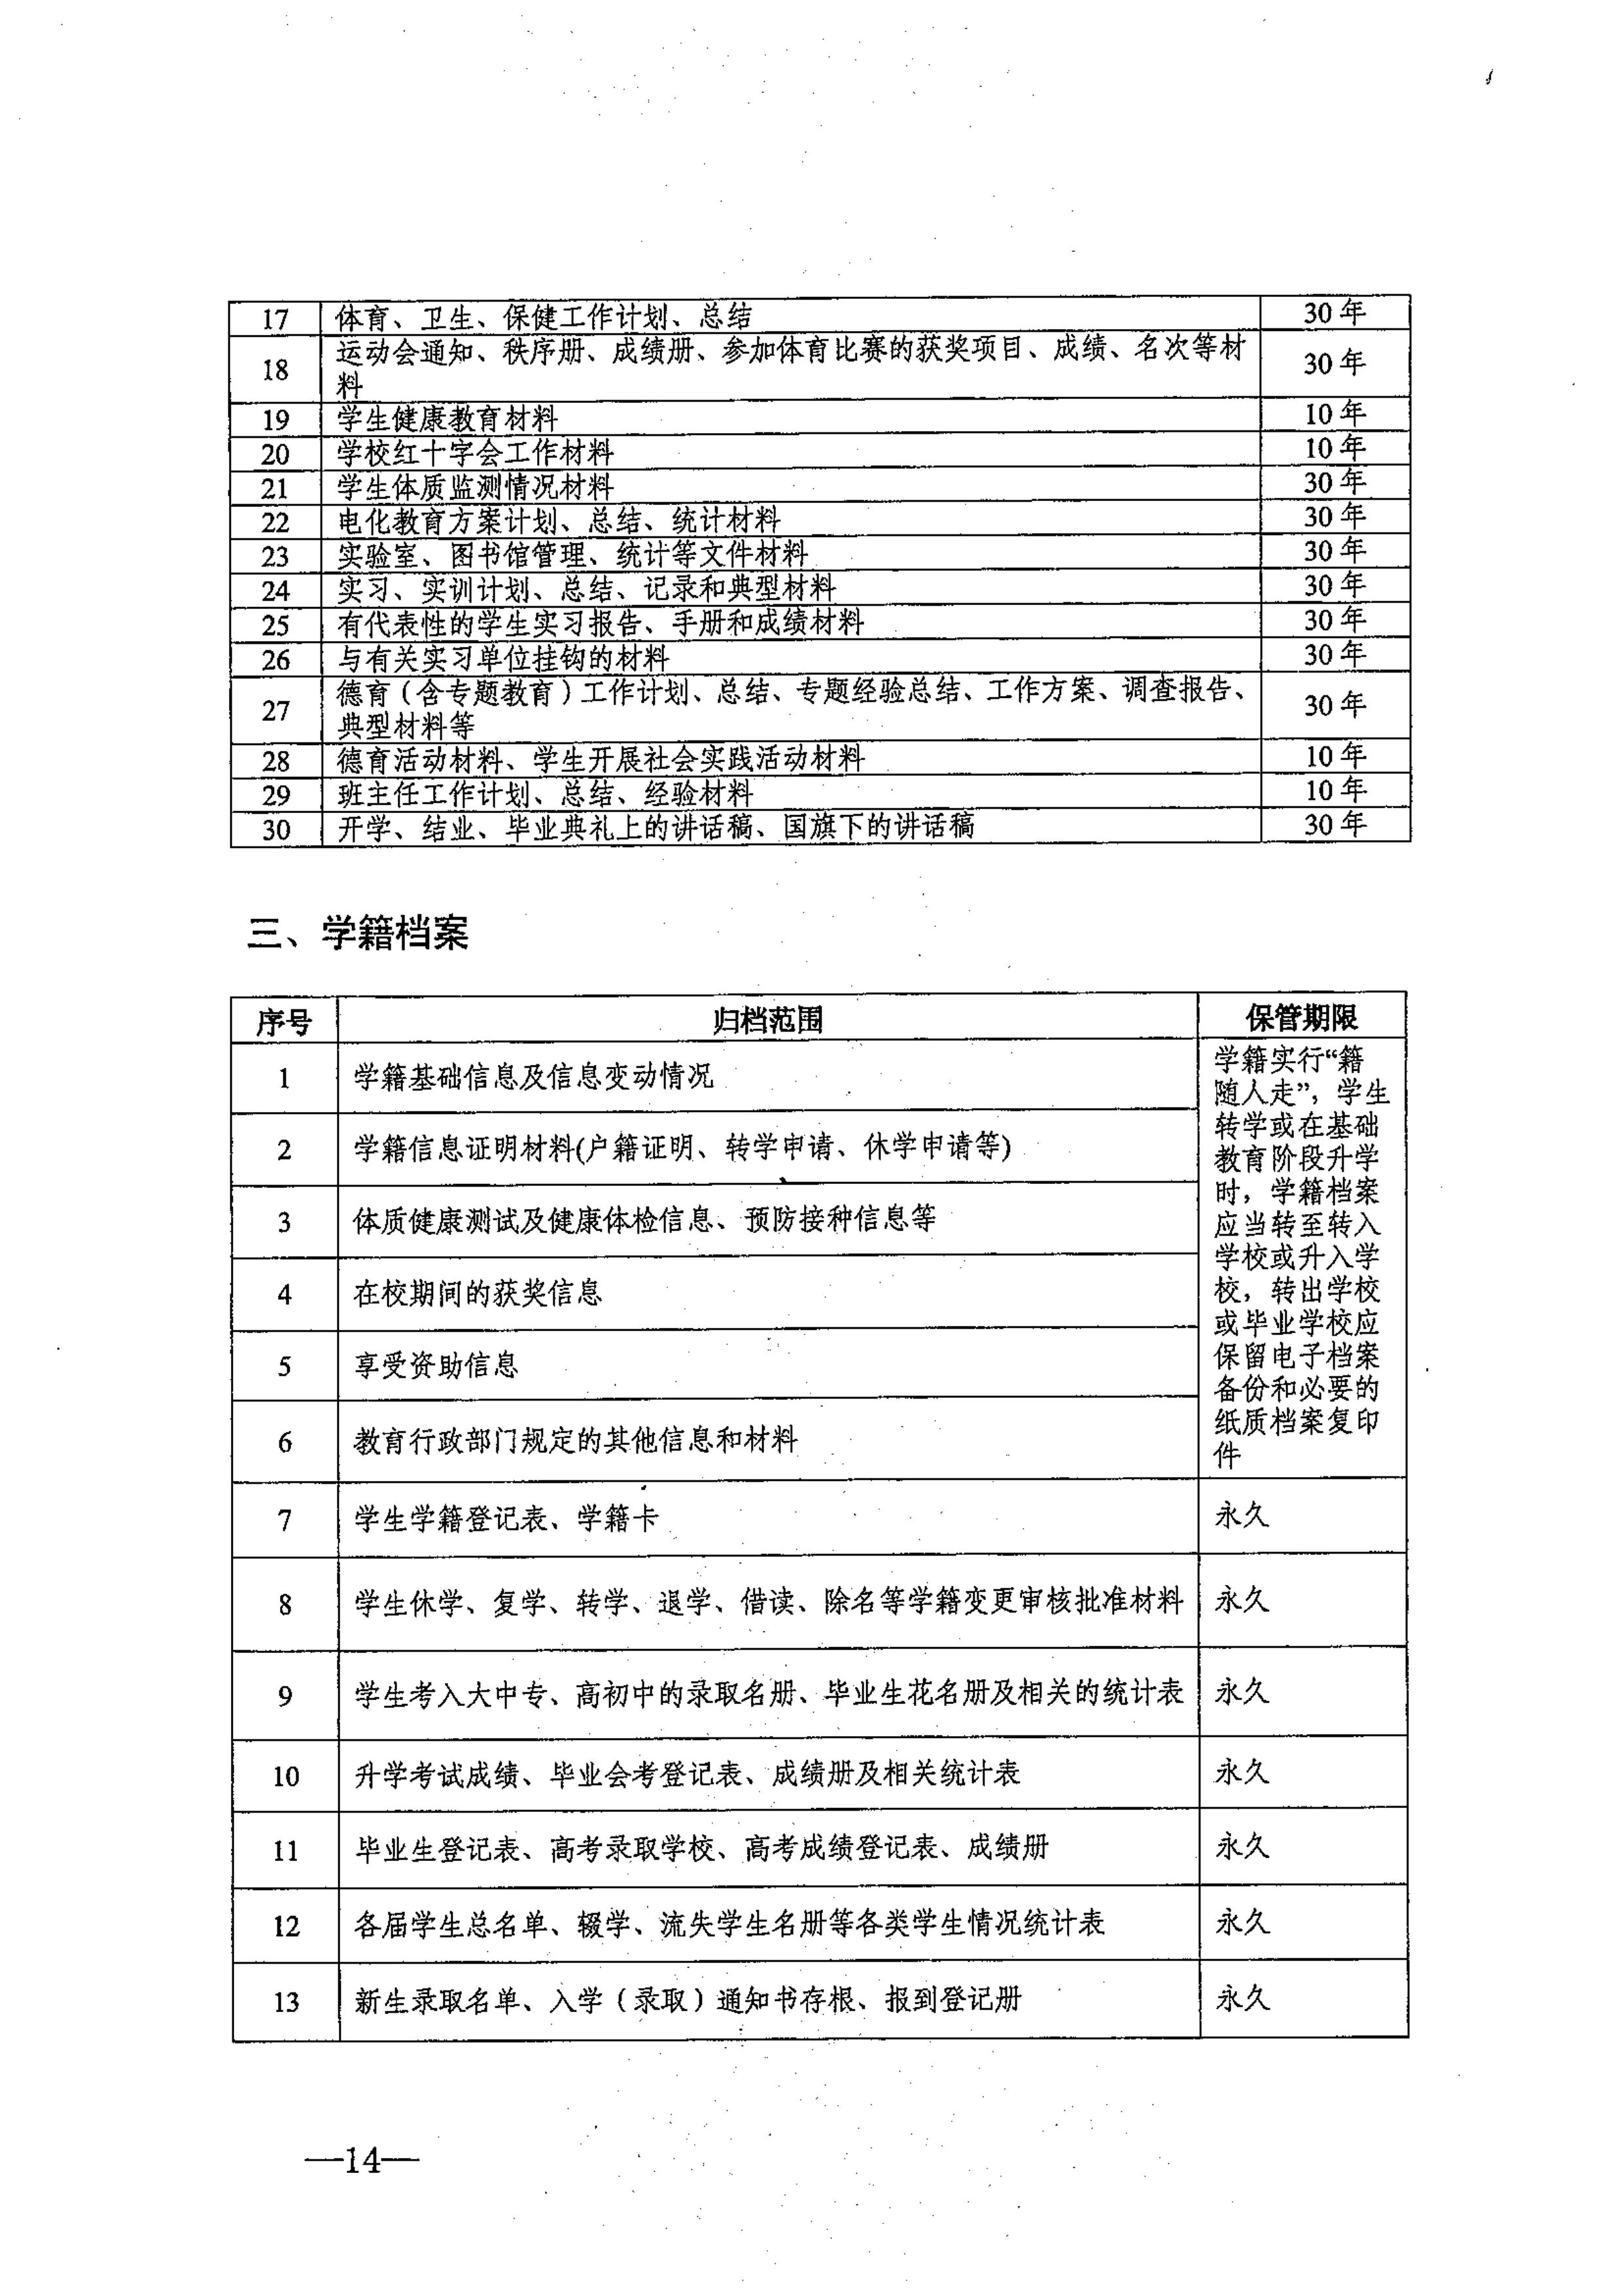 省教育厅、省档案局关于印发《江苏省中小学校档案管理暂行办法》的通知-图片-0014